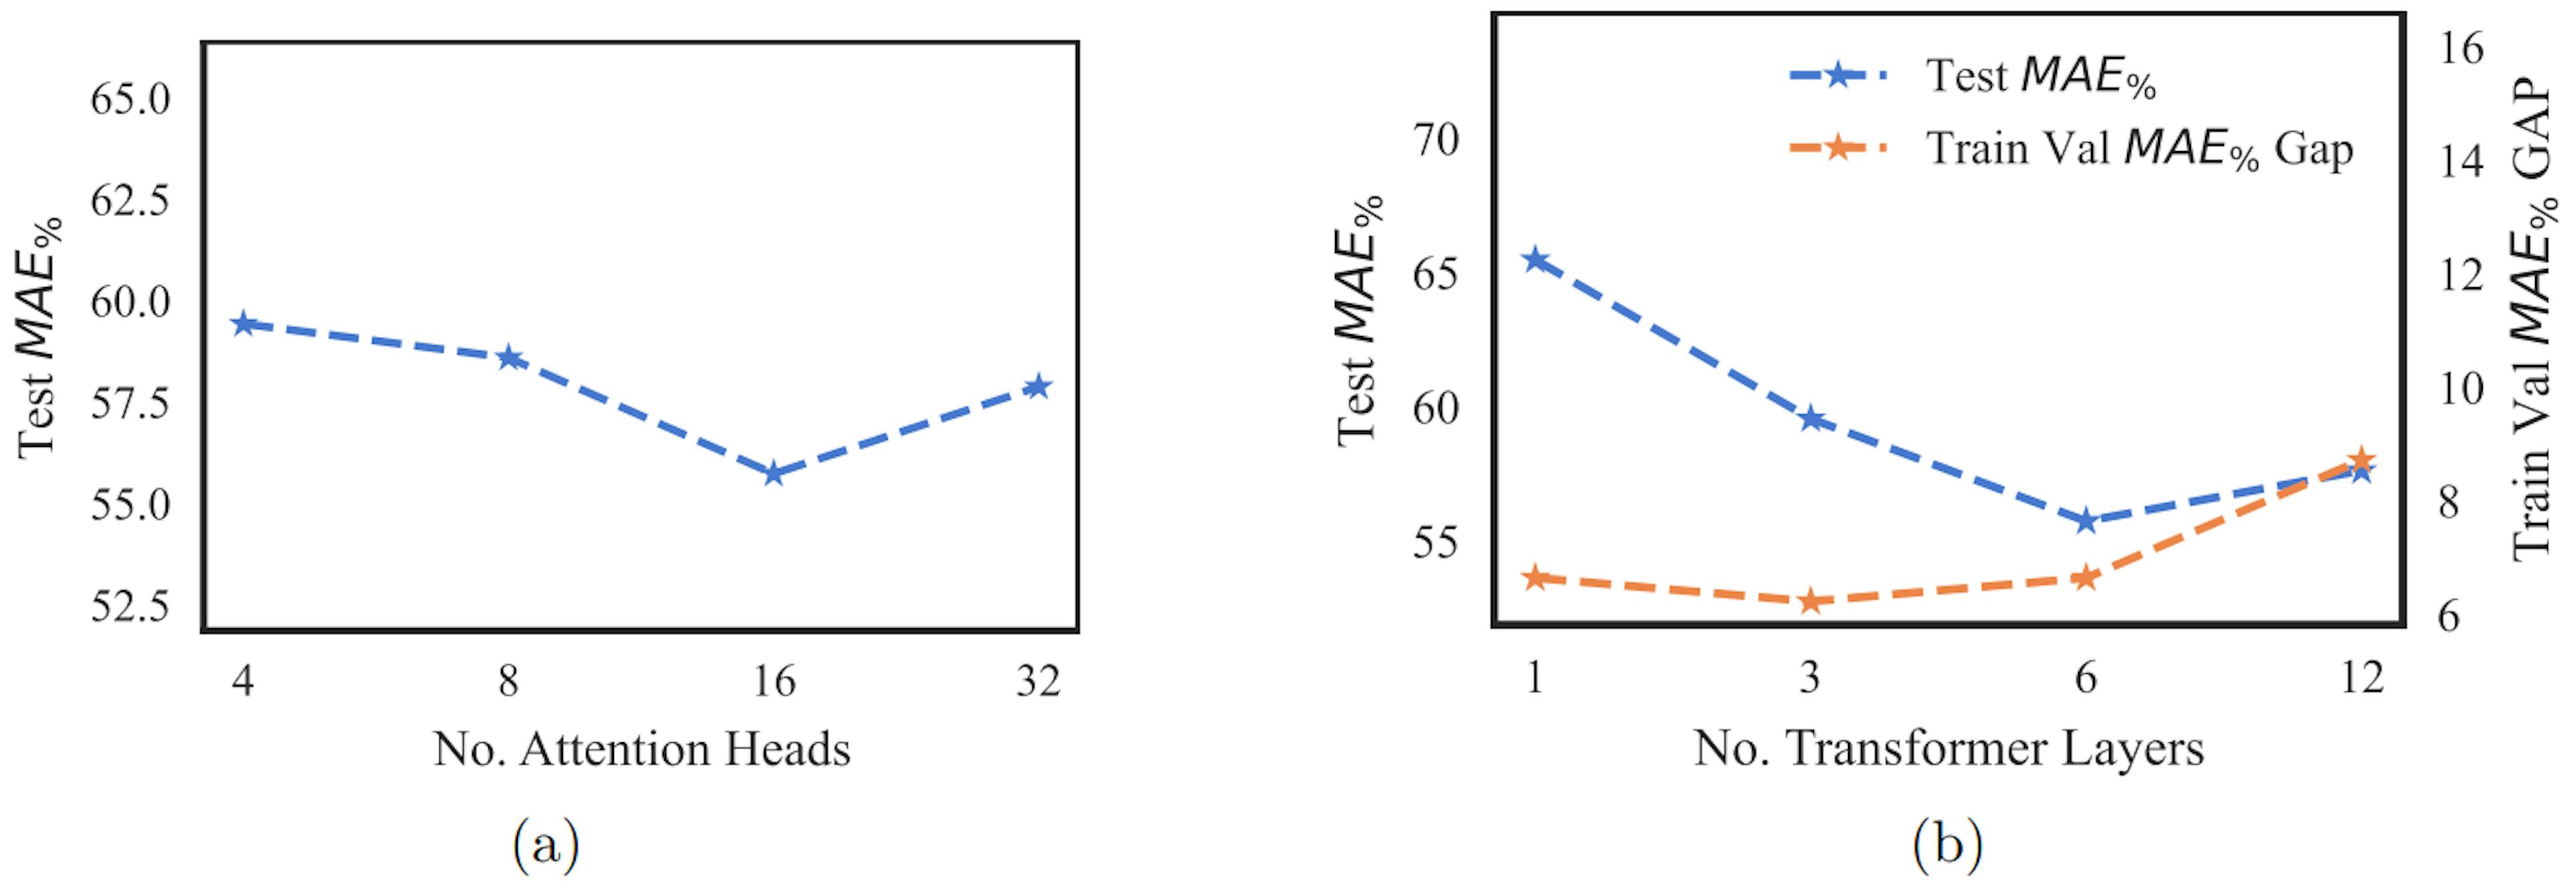 Figure 2 : La figure A teste les graphiques MAE% par rapport au nombre de têtes d'attention. Les tracés de la figure b testent l'écart MAE% et train-val MAE% par rapport au nombre de couches de transformateur. MAE% est calculé comme indiqué dans l’équation 4.